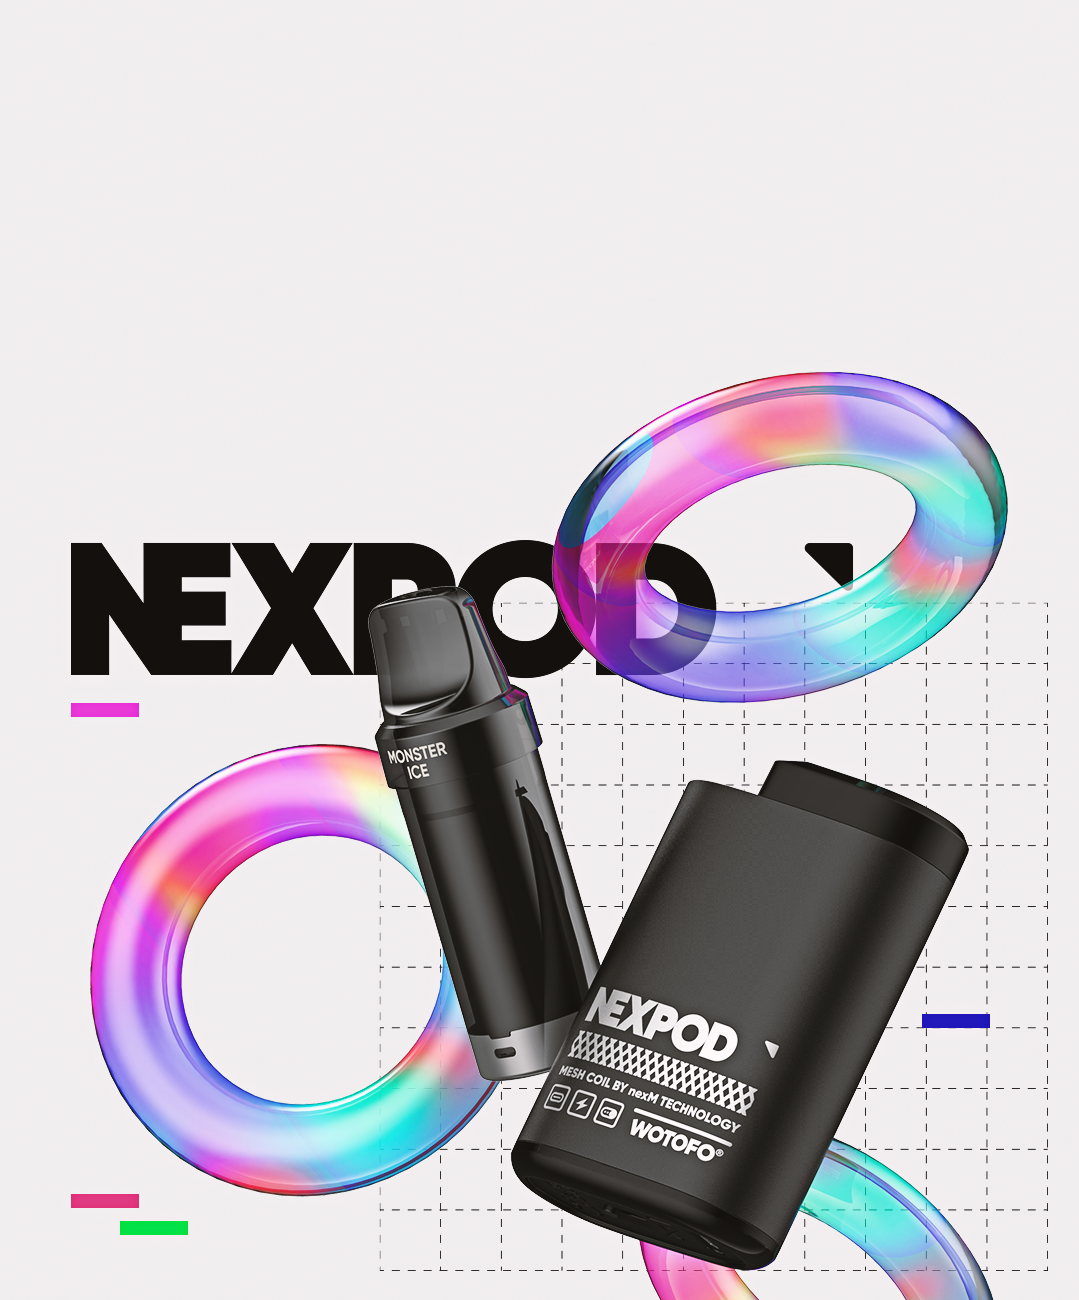 wotofo nexpod 01 mobile